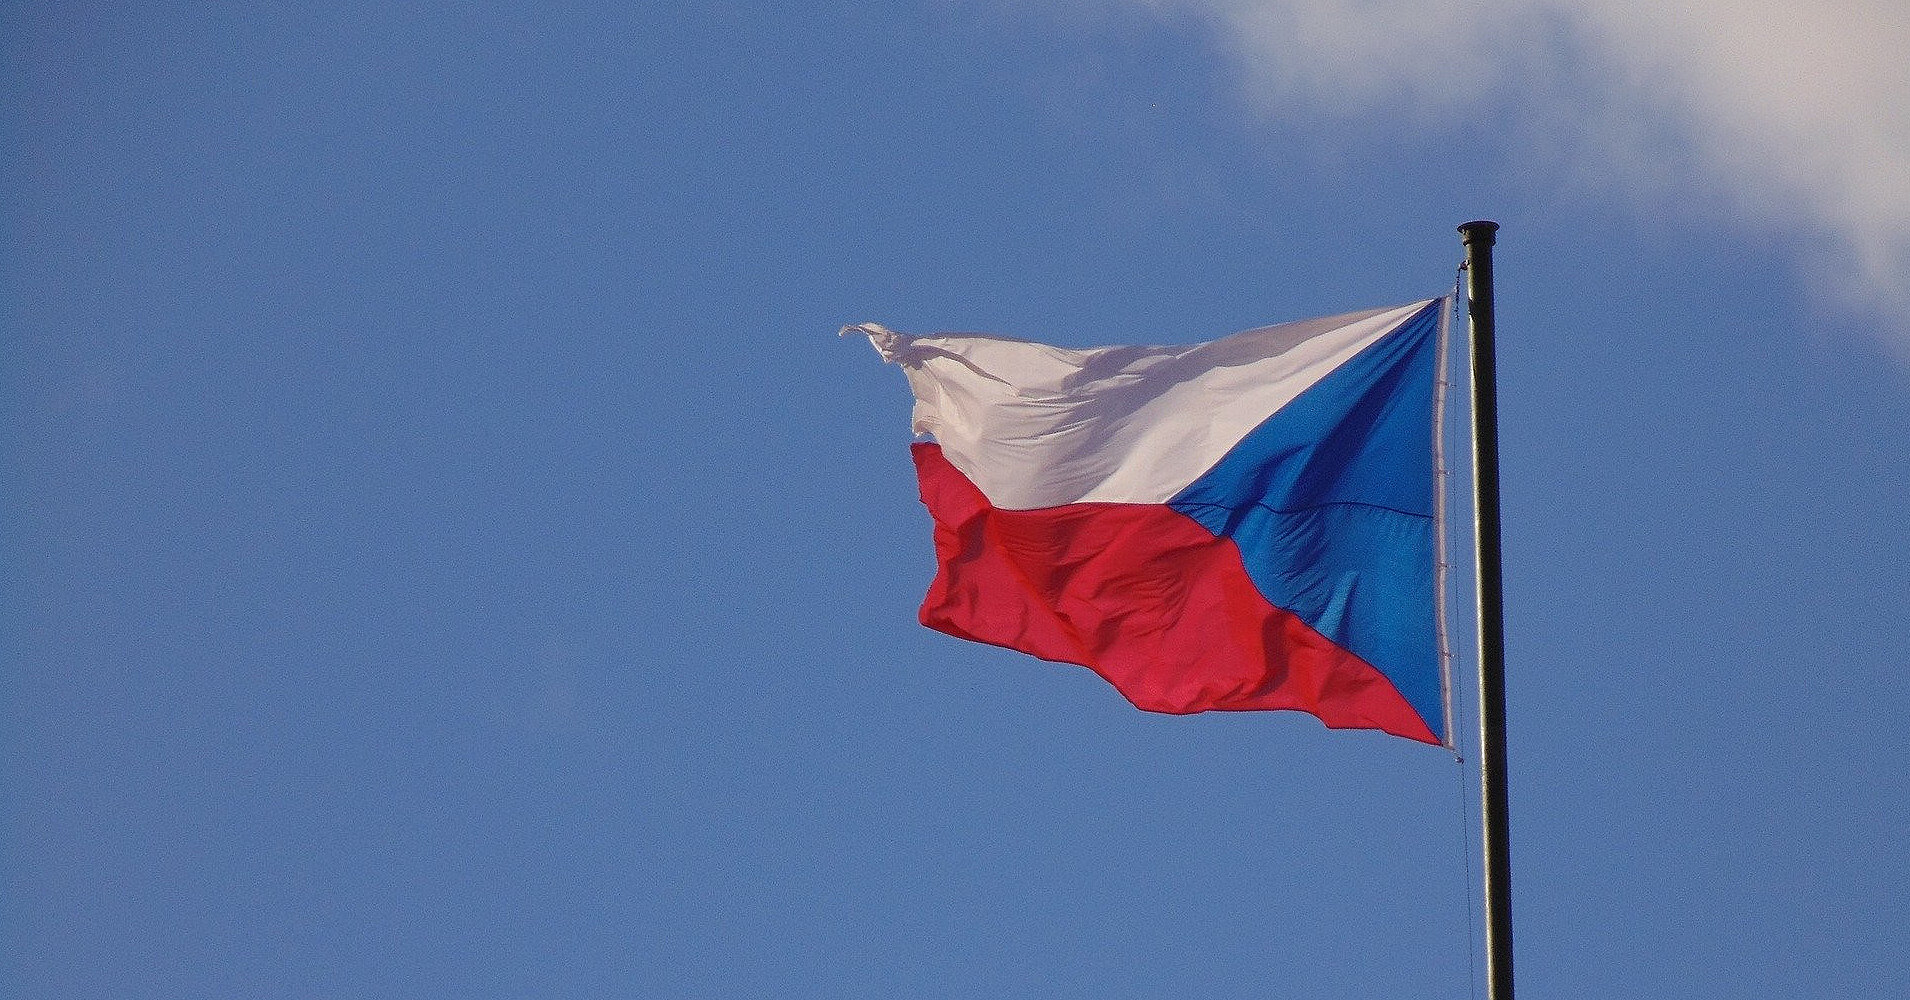 Снаряды для Украины: Чехия выделит средства на свою инициативу